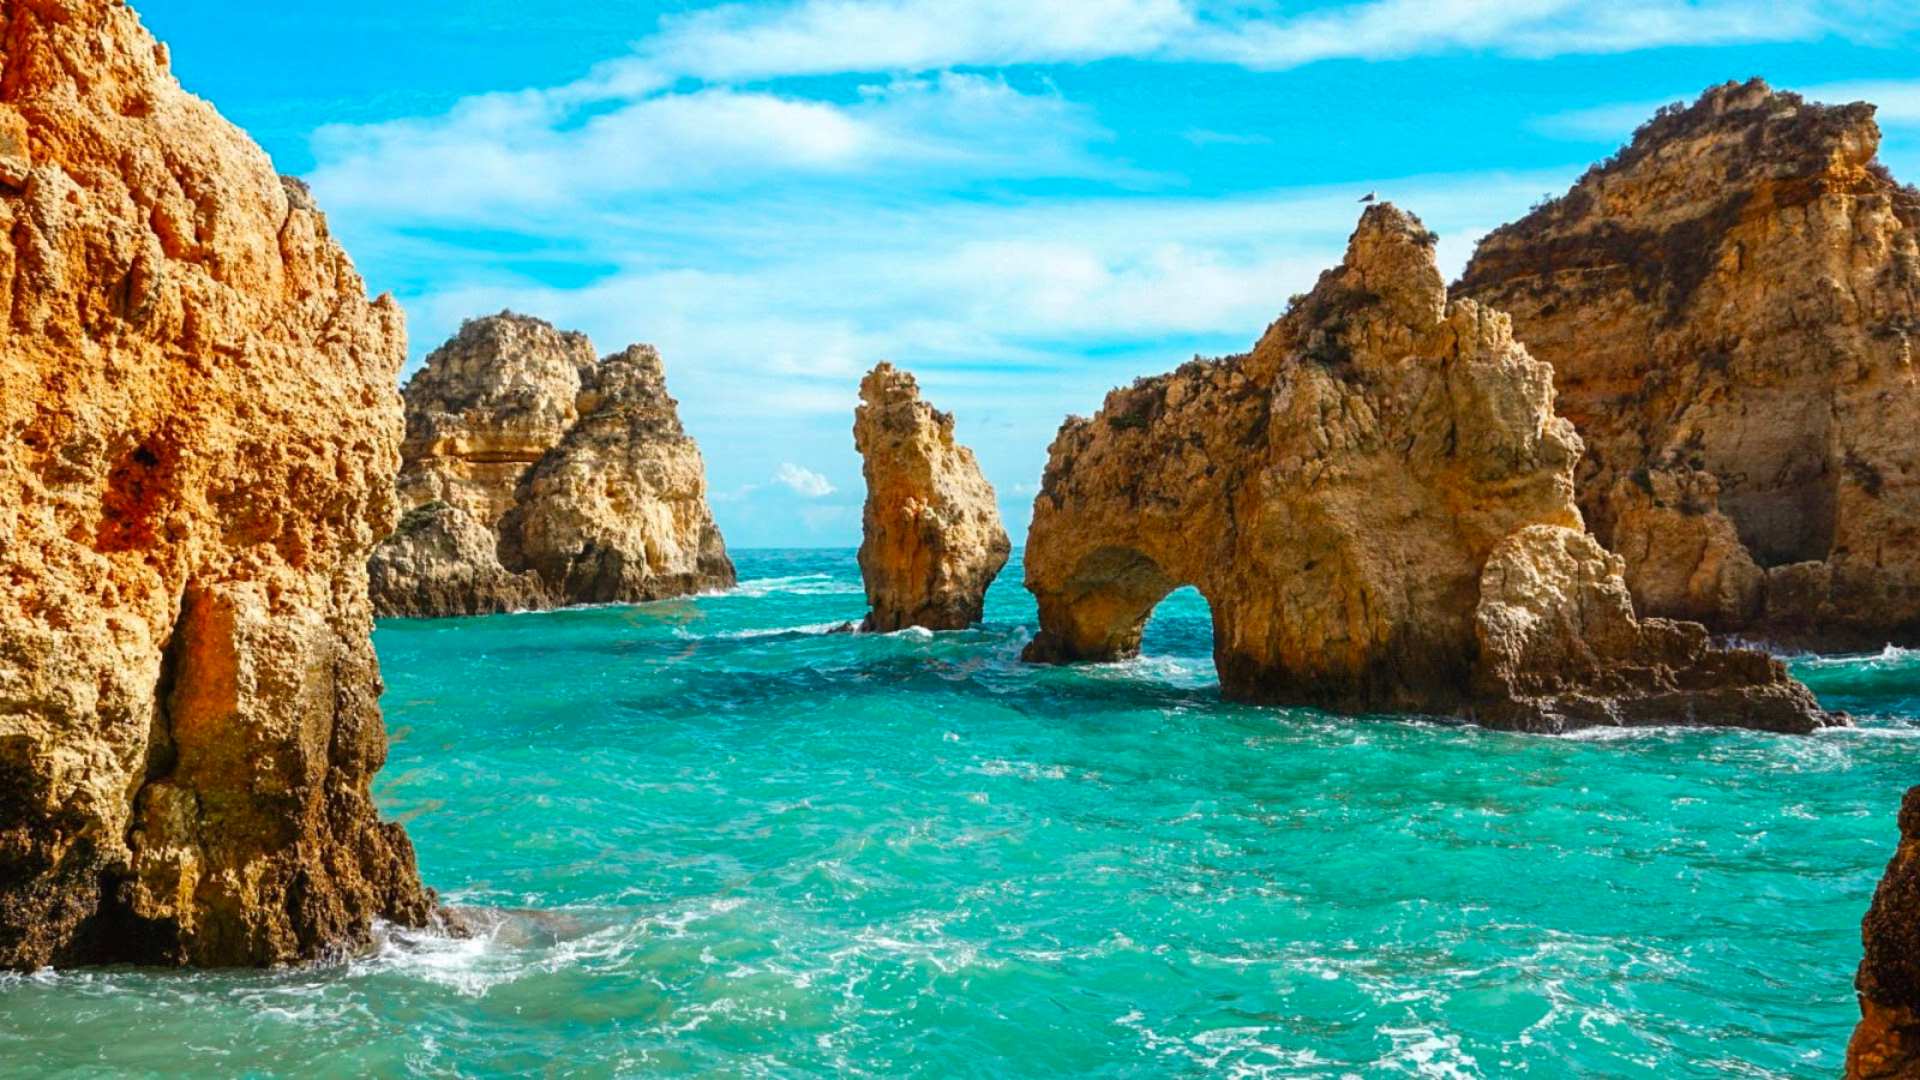 Vacanta in minunatul Algarve, Portugalia – 174 euro (zbor + cazare 6 nopti) – cunoscut pentru plaje exotice